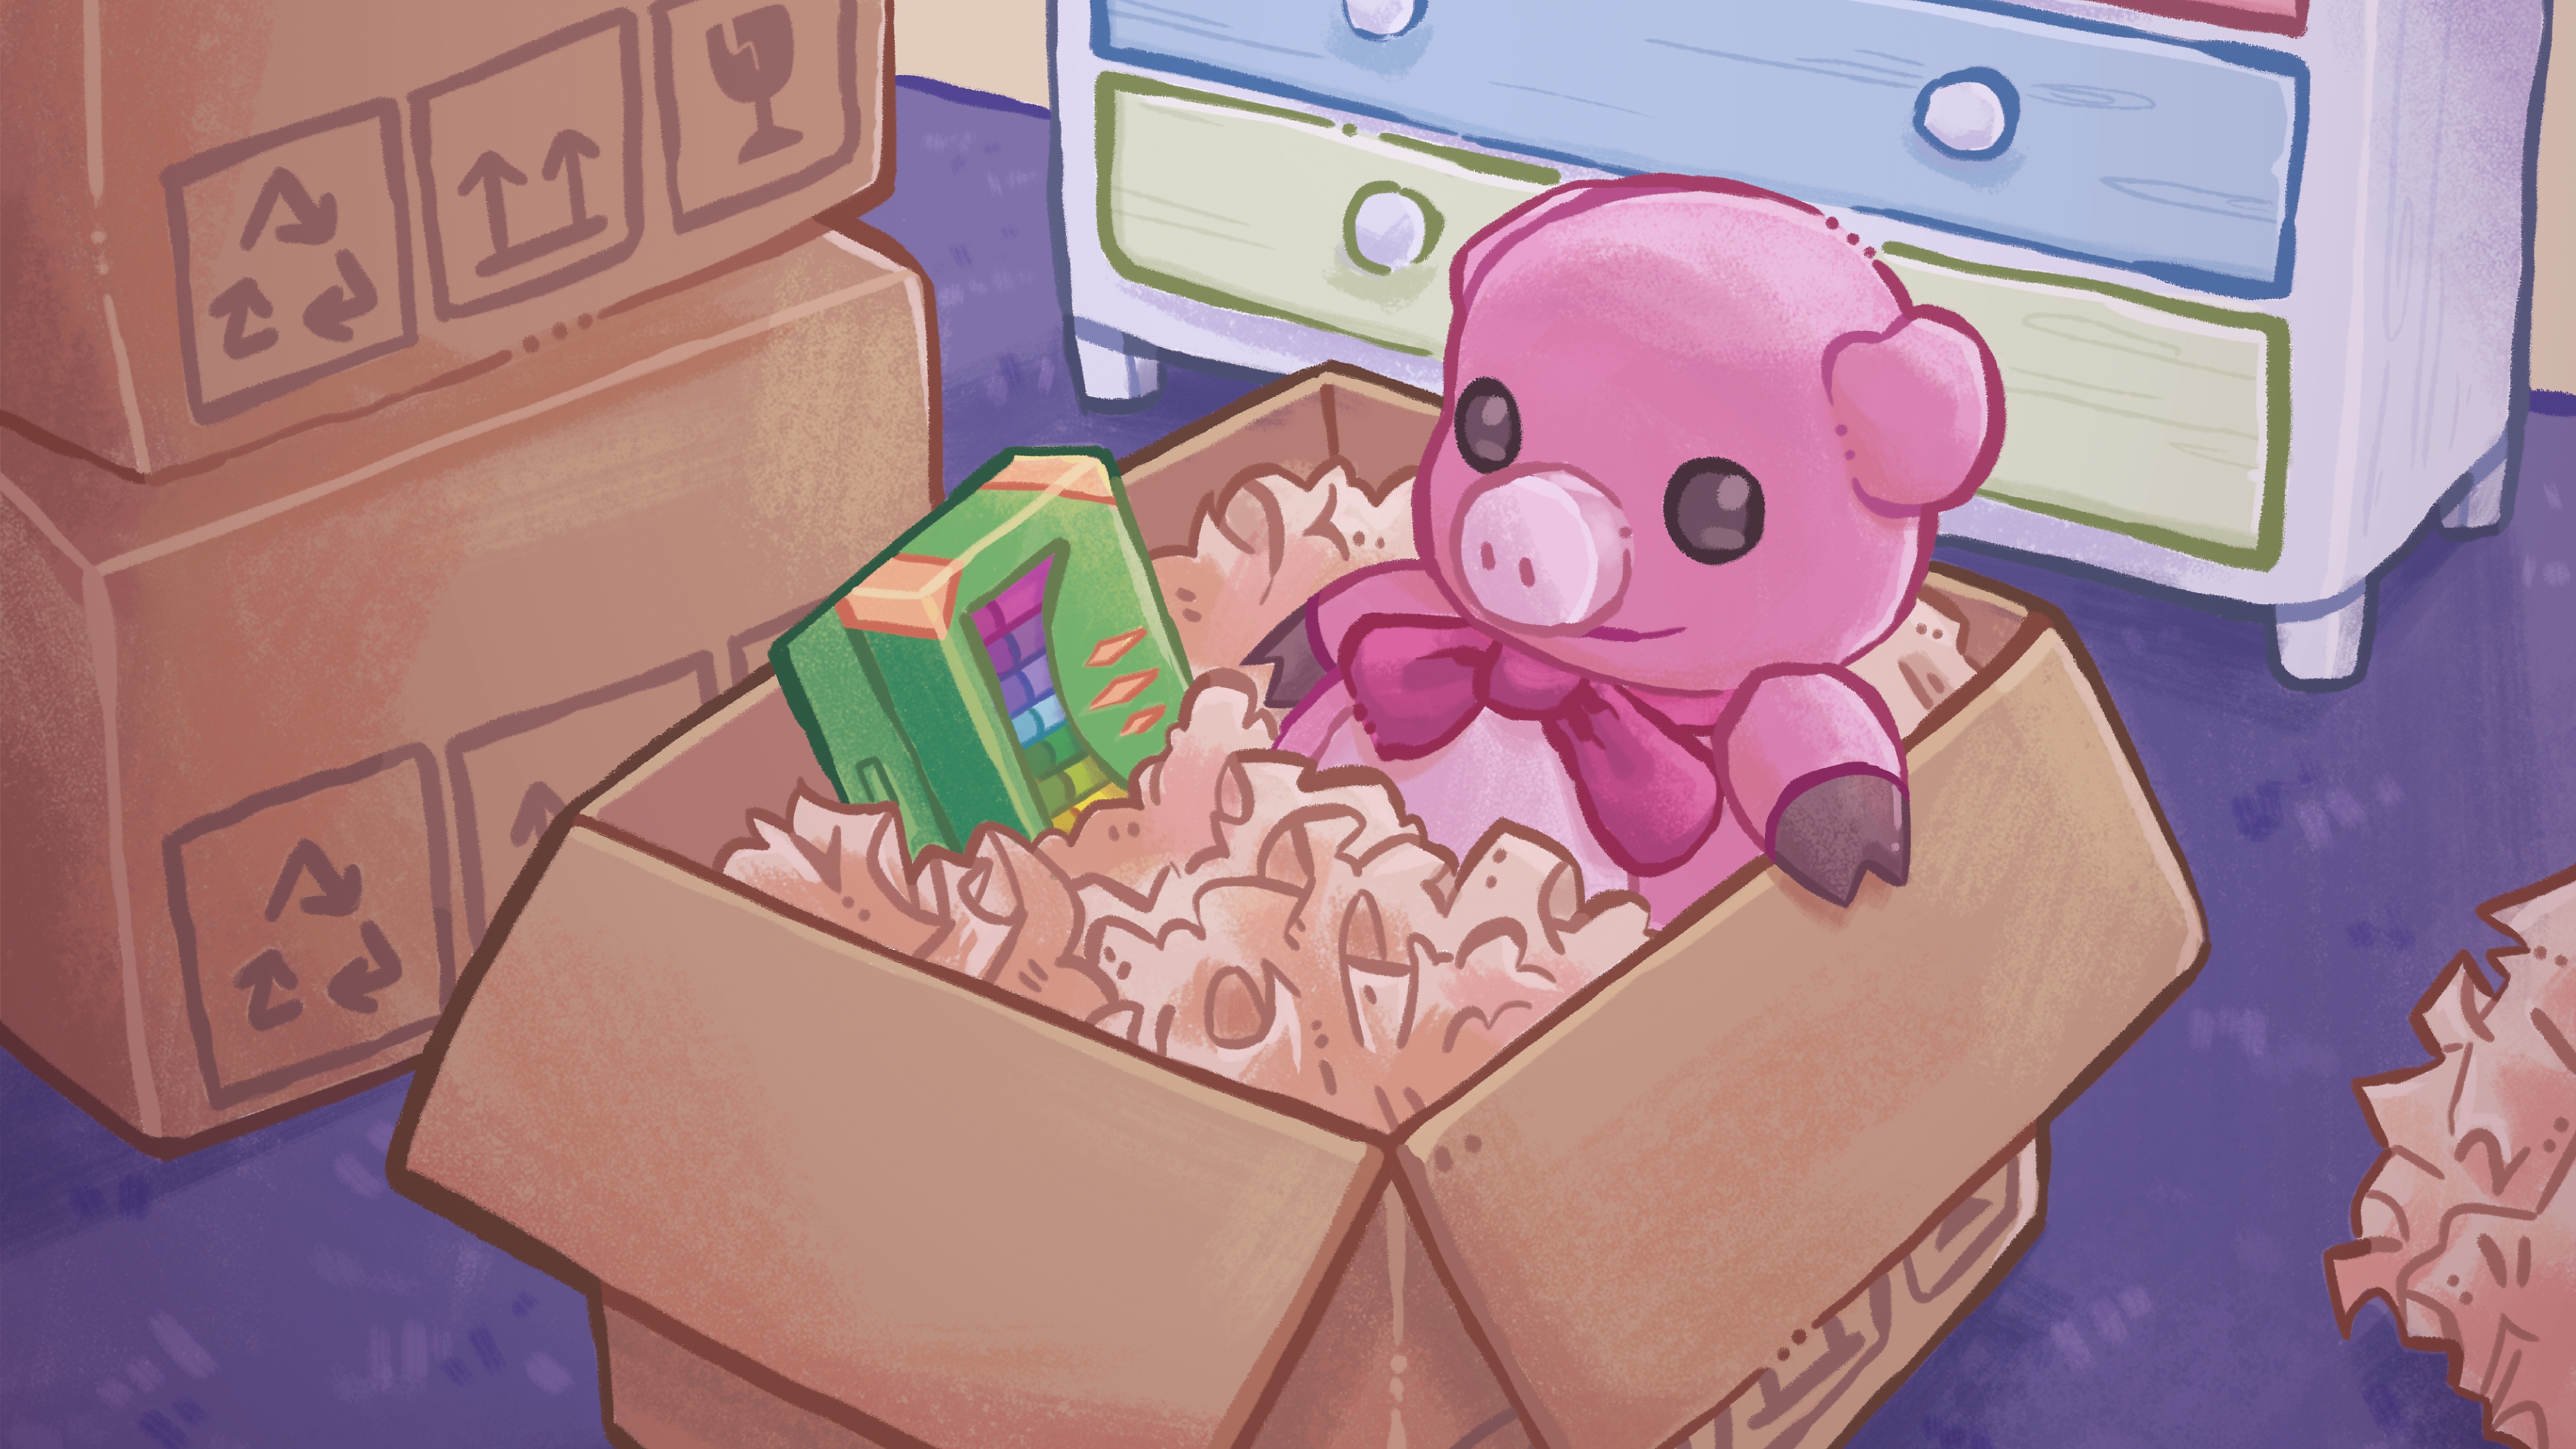 Arte guía de Unpacking, con una colorida ilustración dibujada a mano de un peluche y una caja de lápices de colores en una caja de cartón.